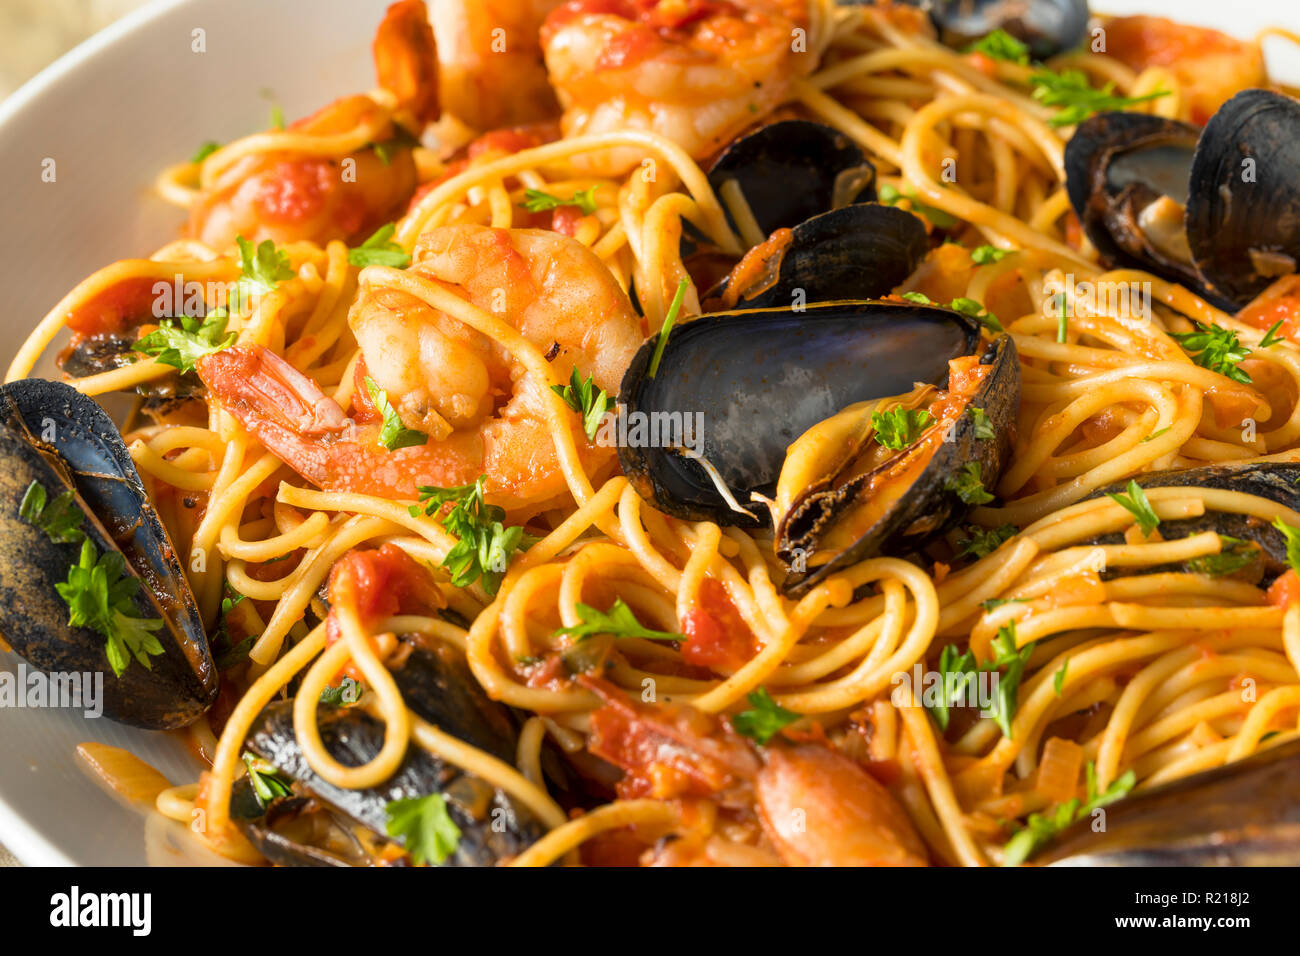 Pâtes aux fruits de mer italienne faite maison avec les moules et les crevettes Banque D'Images